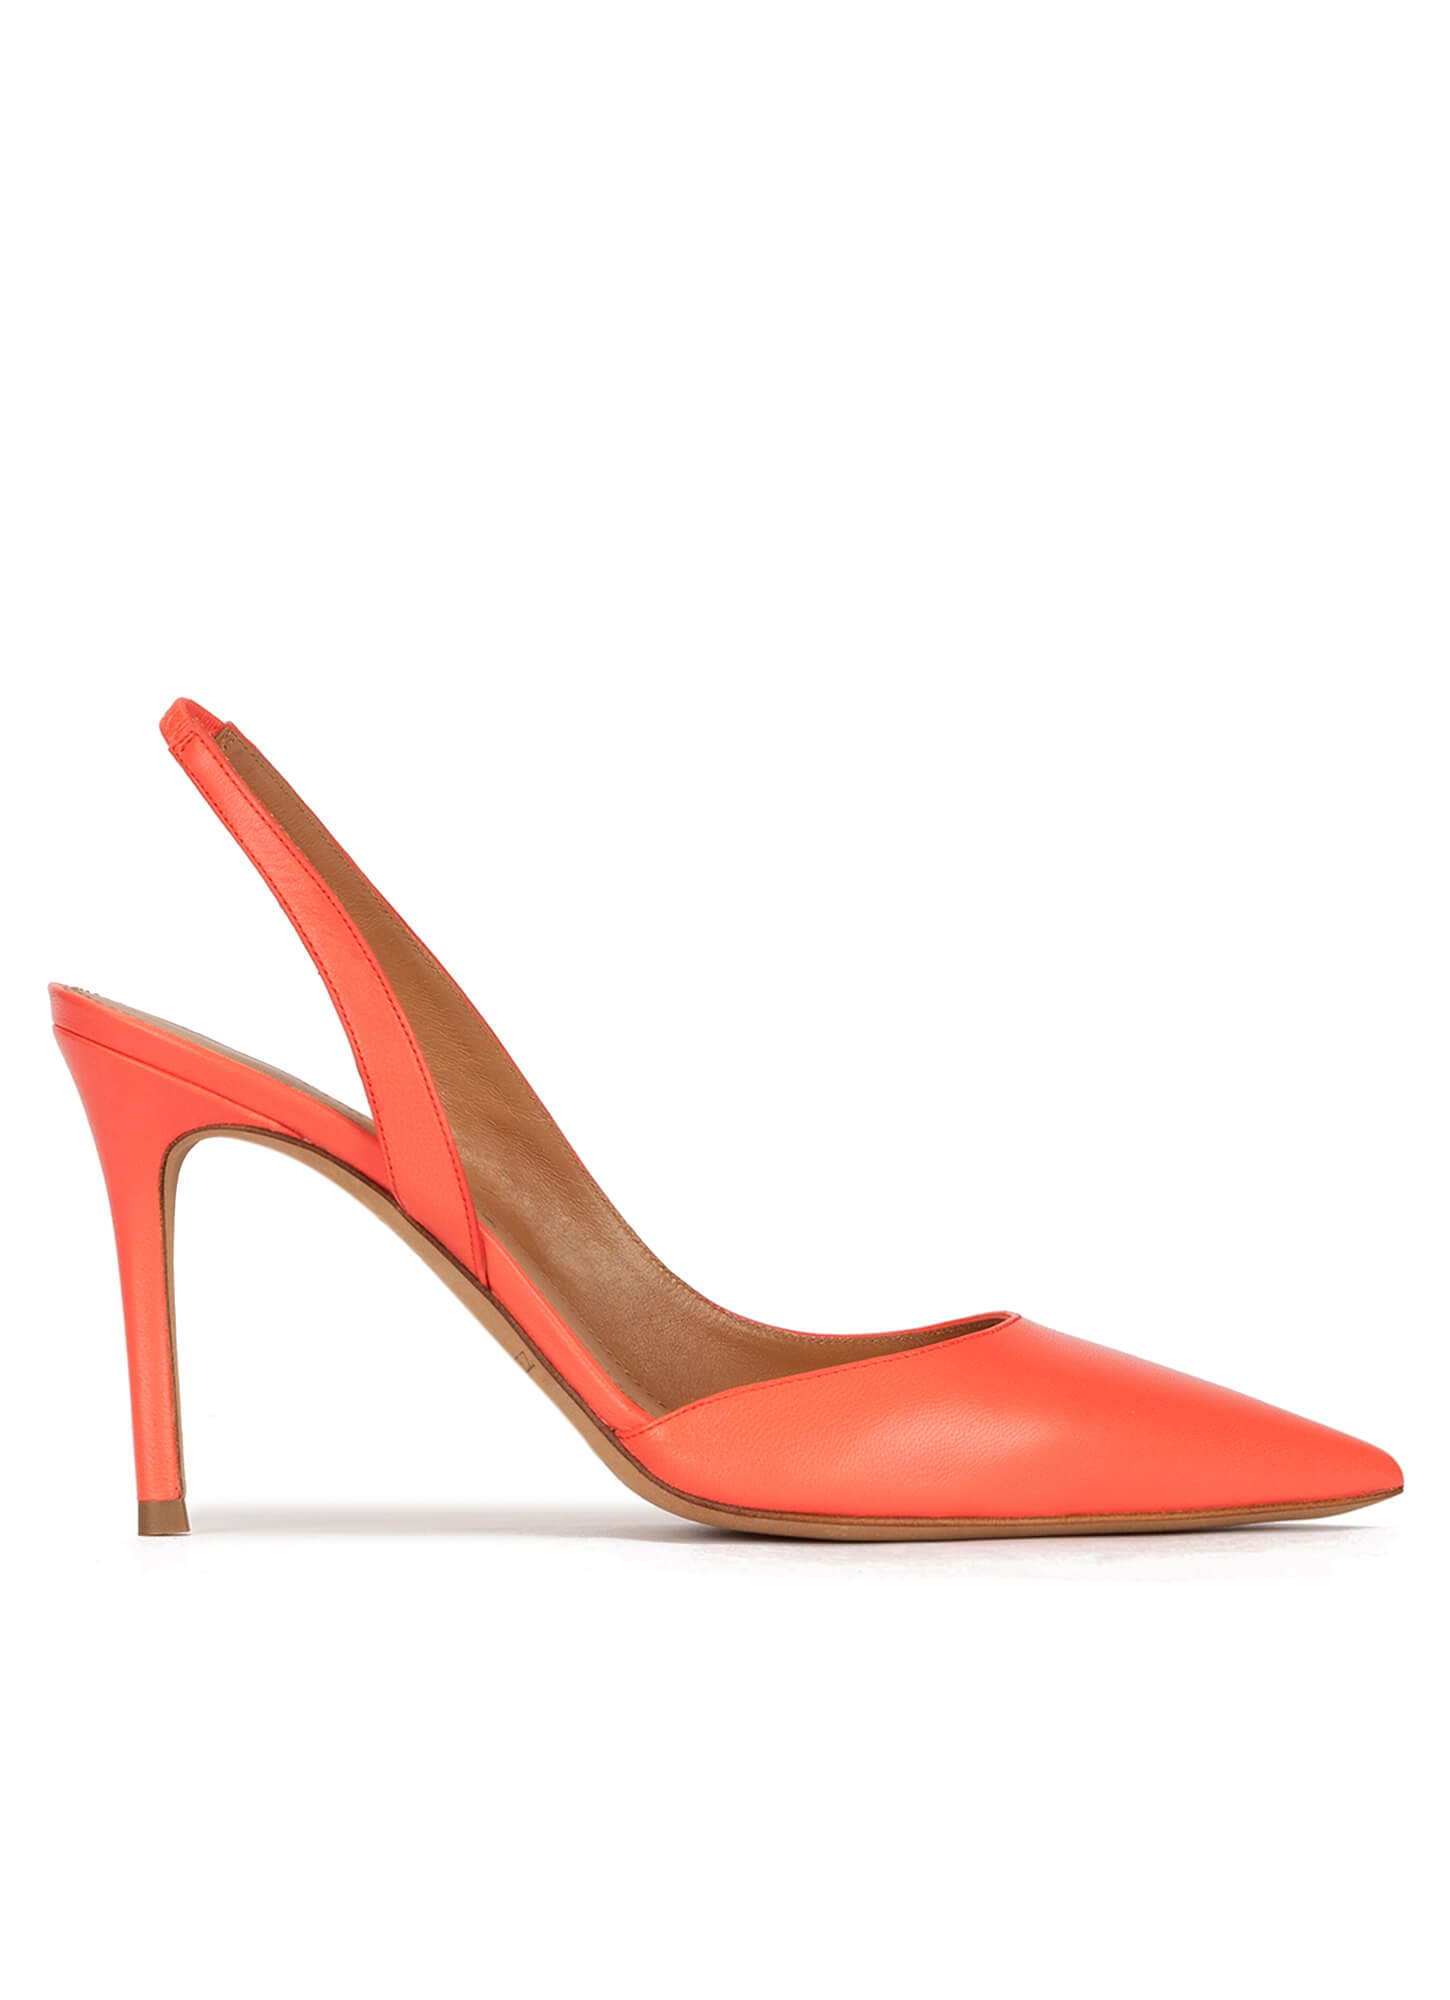 Elle Coral open toe heels | Open toe heel, Leather peep toe heels, Heels  shopping